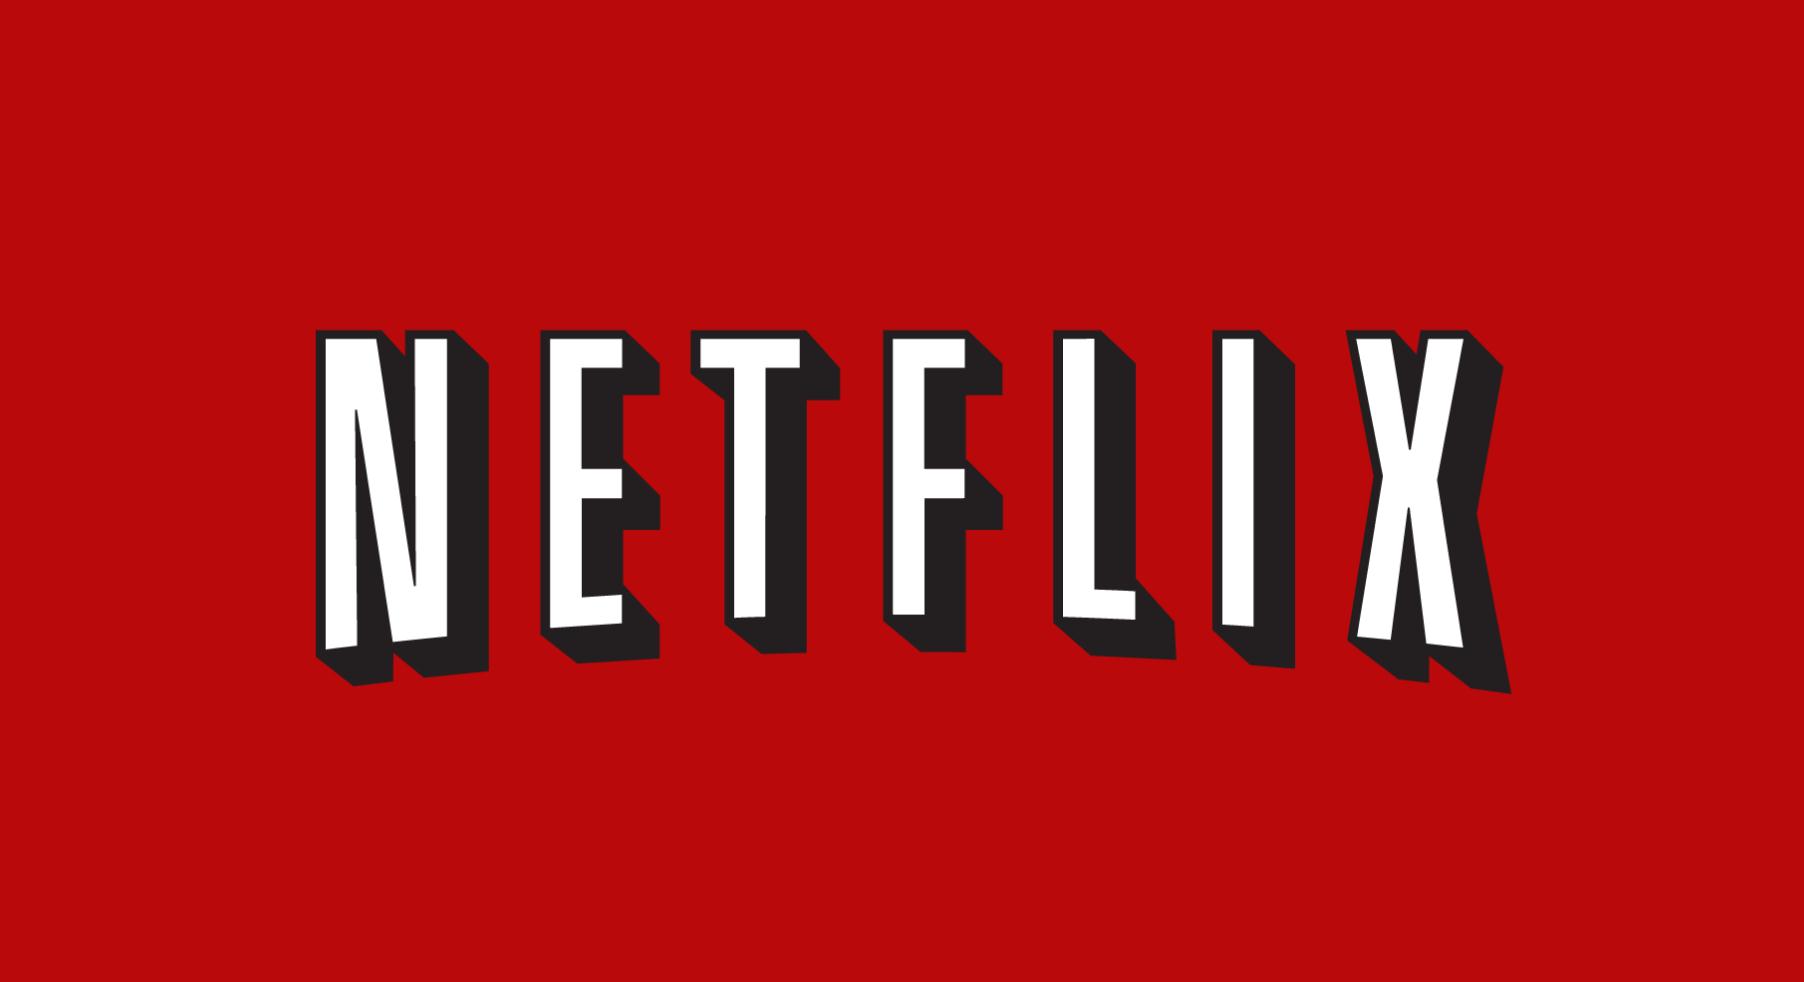 第二季度Netflix App Store收入排行榜上再次跃居第一